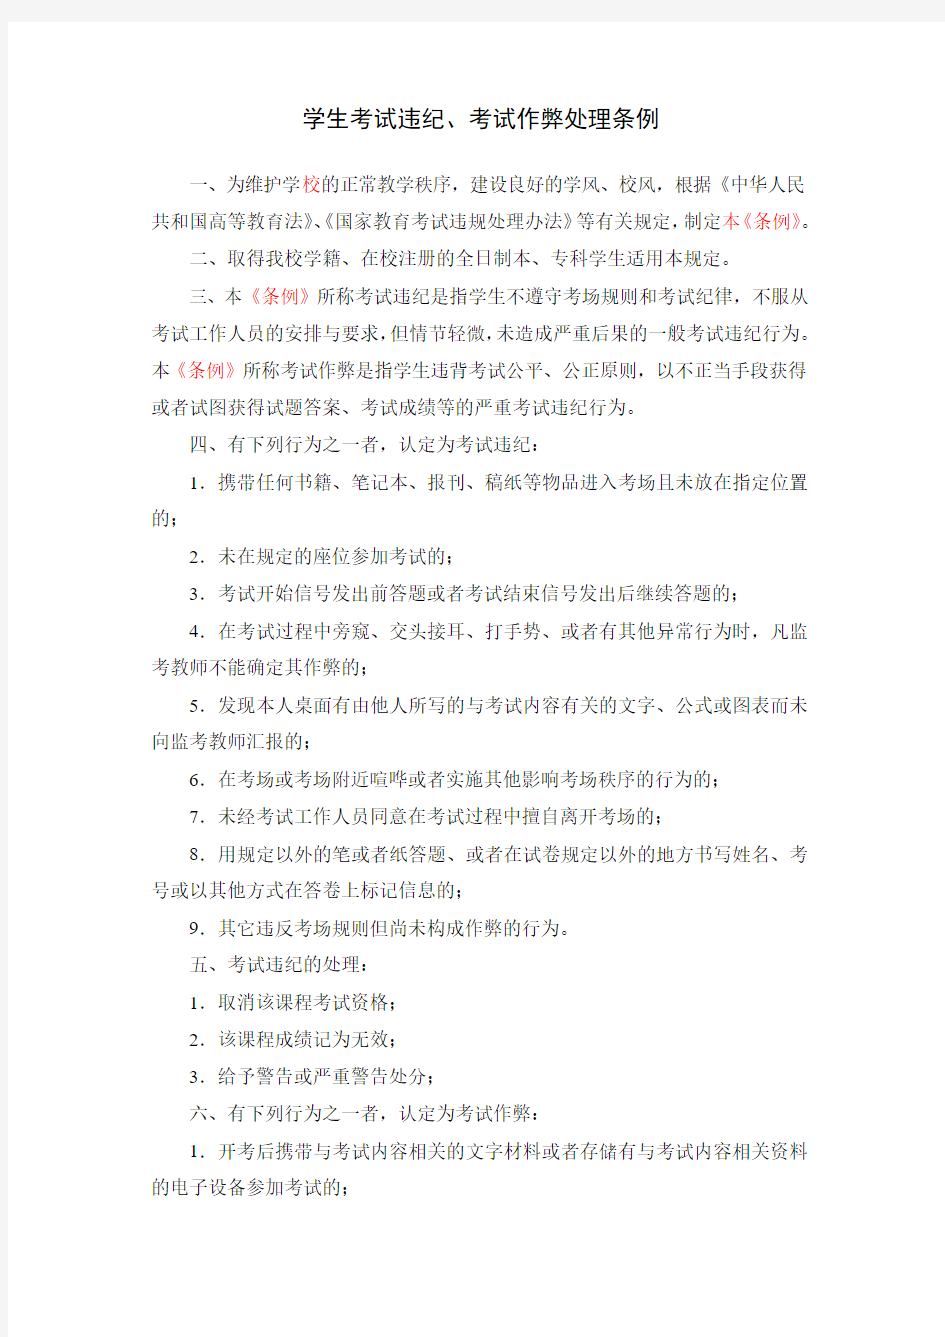 上海电机学院学生考试违纪、考试作弊处理条例